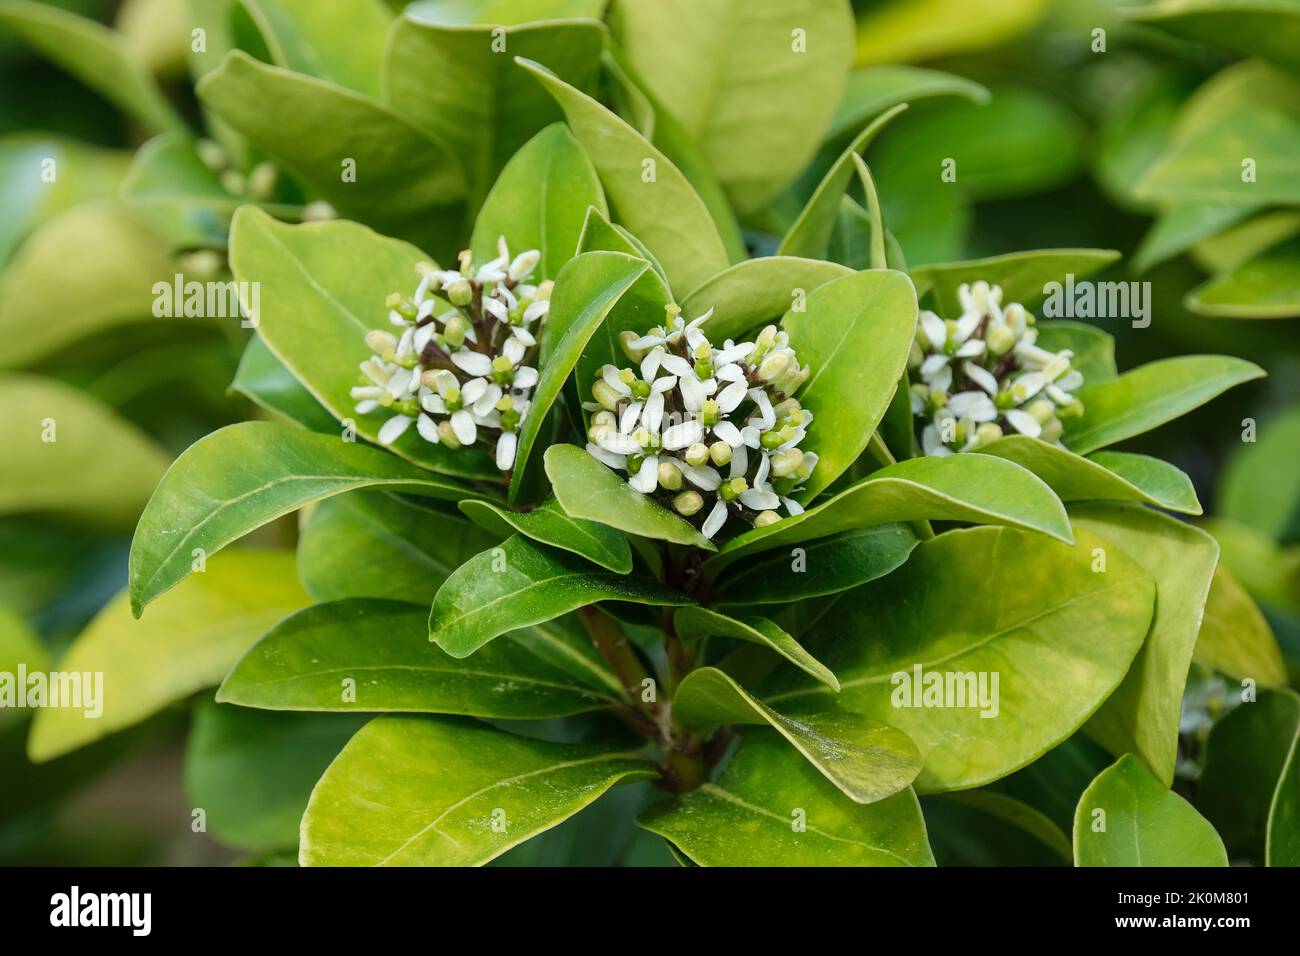 Skimmia japonica sous-espèce pumila. Panicules terminaux de petites fleurs blanches / jaunâtres au printemps Banque D'Images